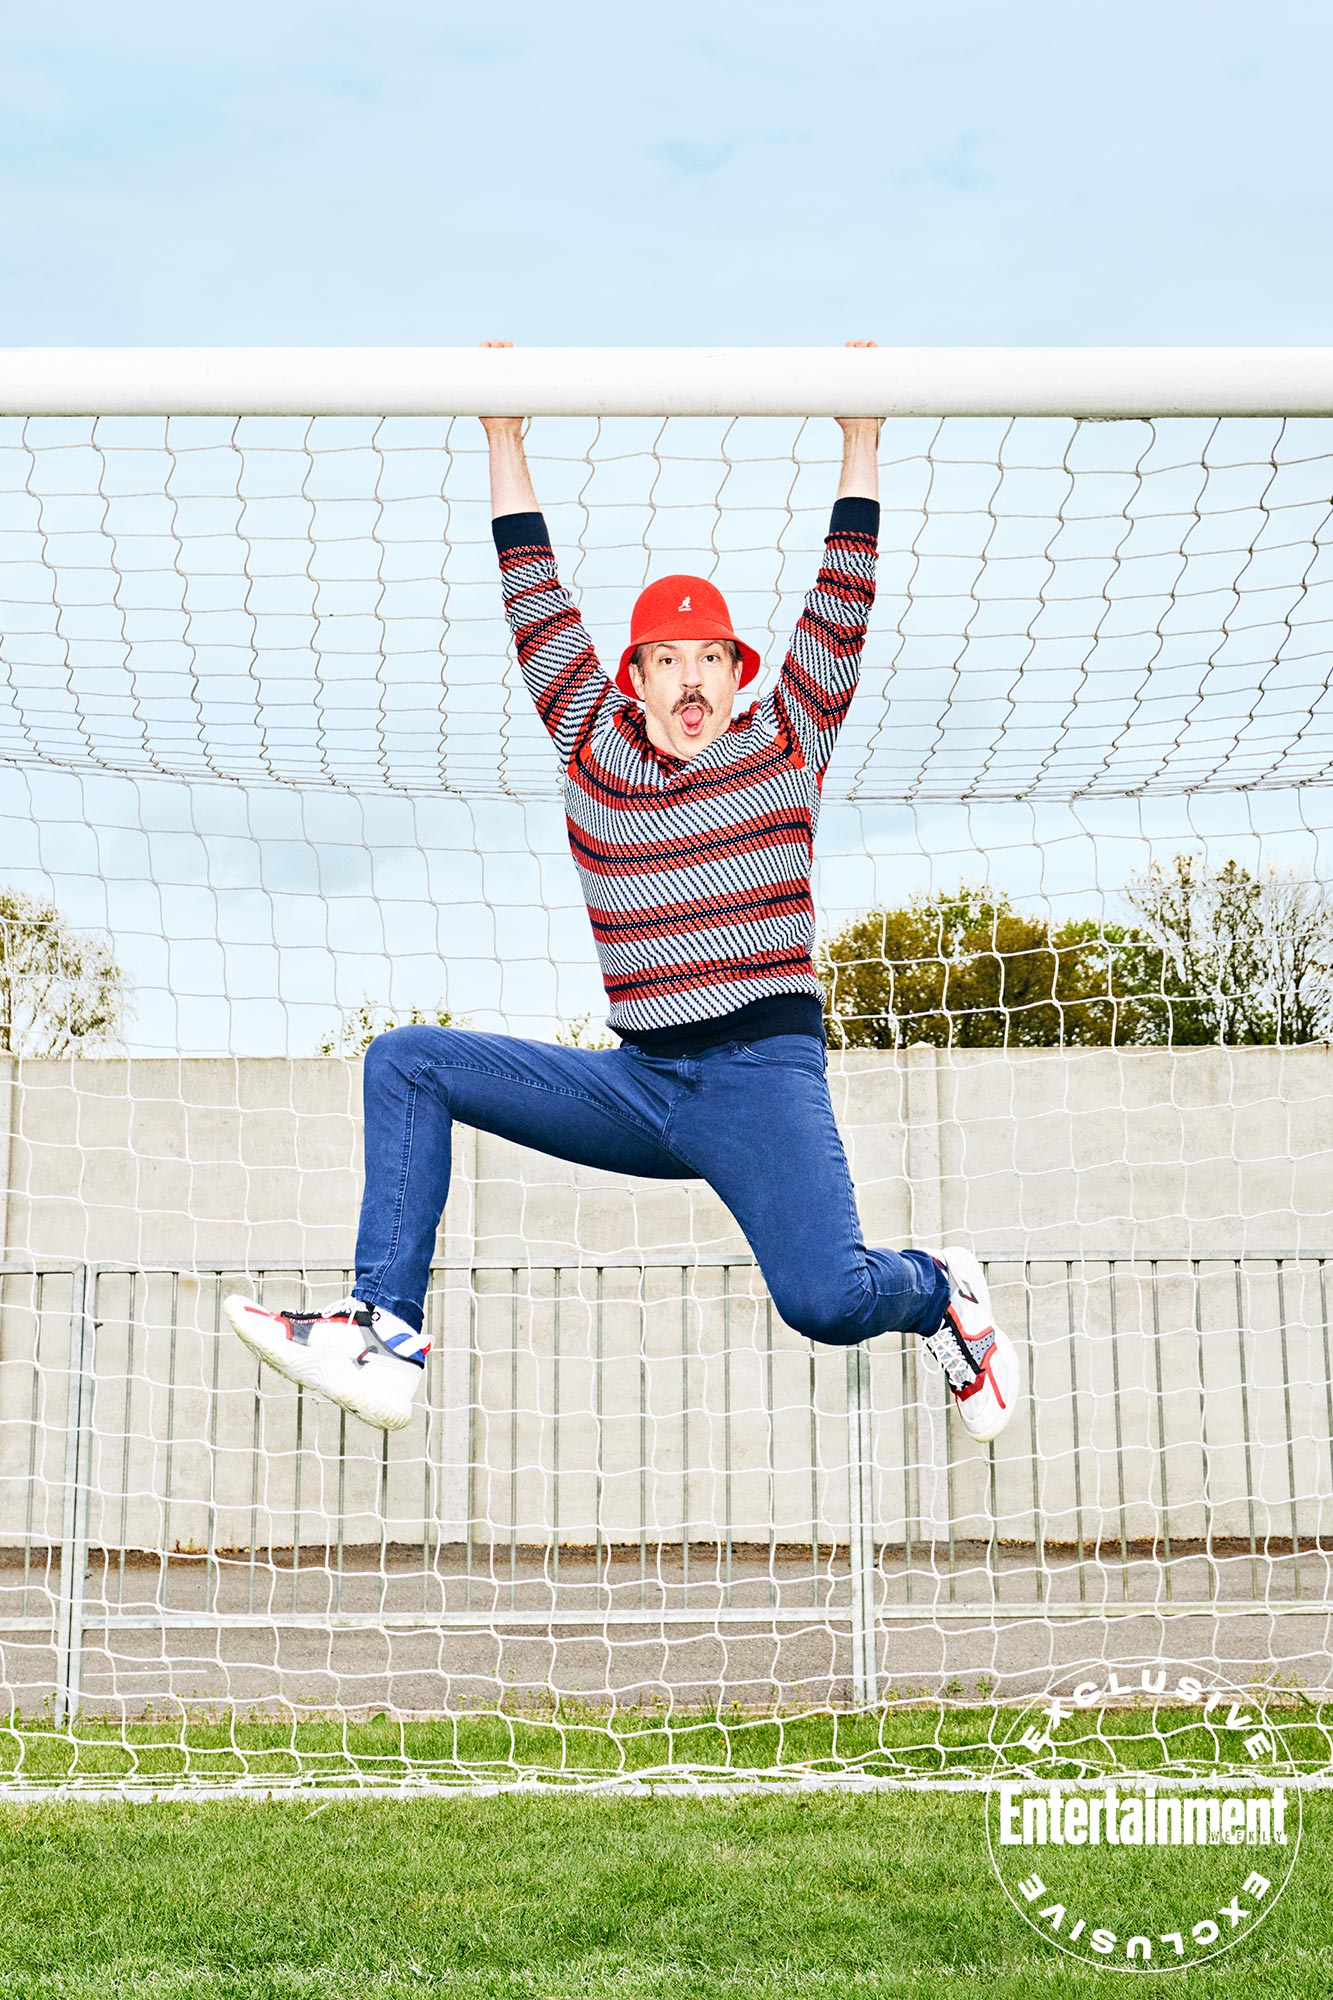 Jason Sudeikis hanging from goal post wearing red Kangol hat